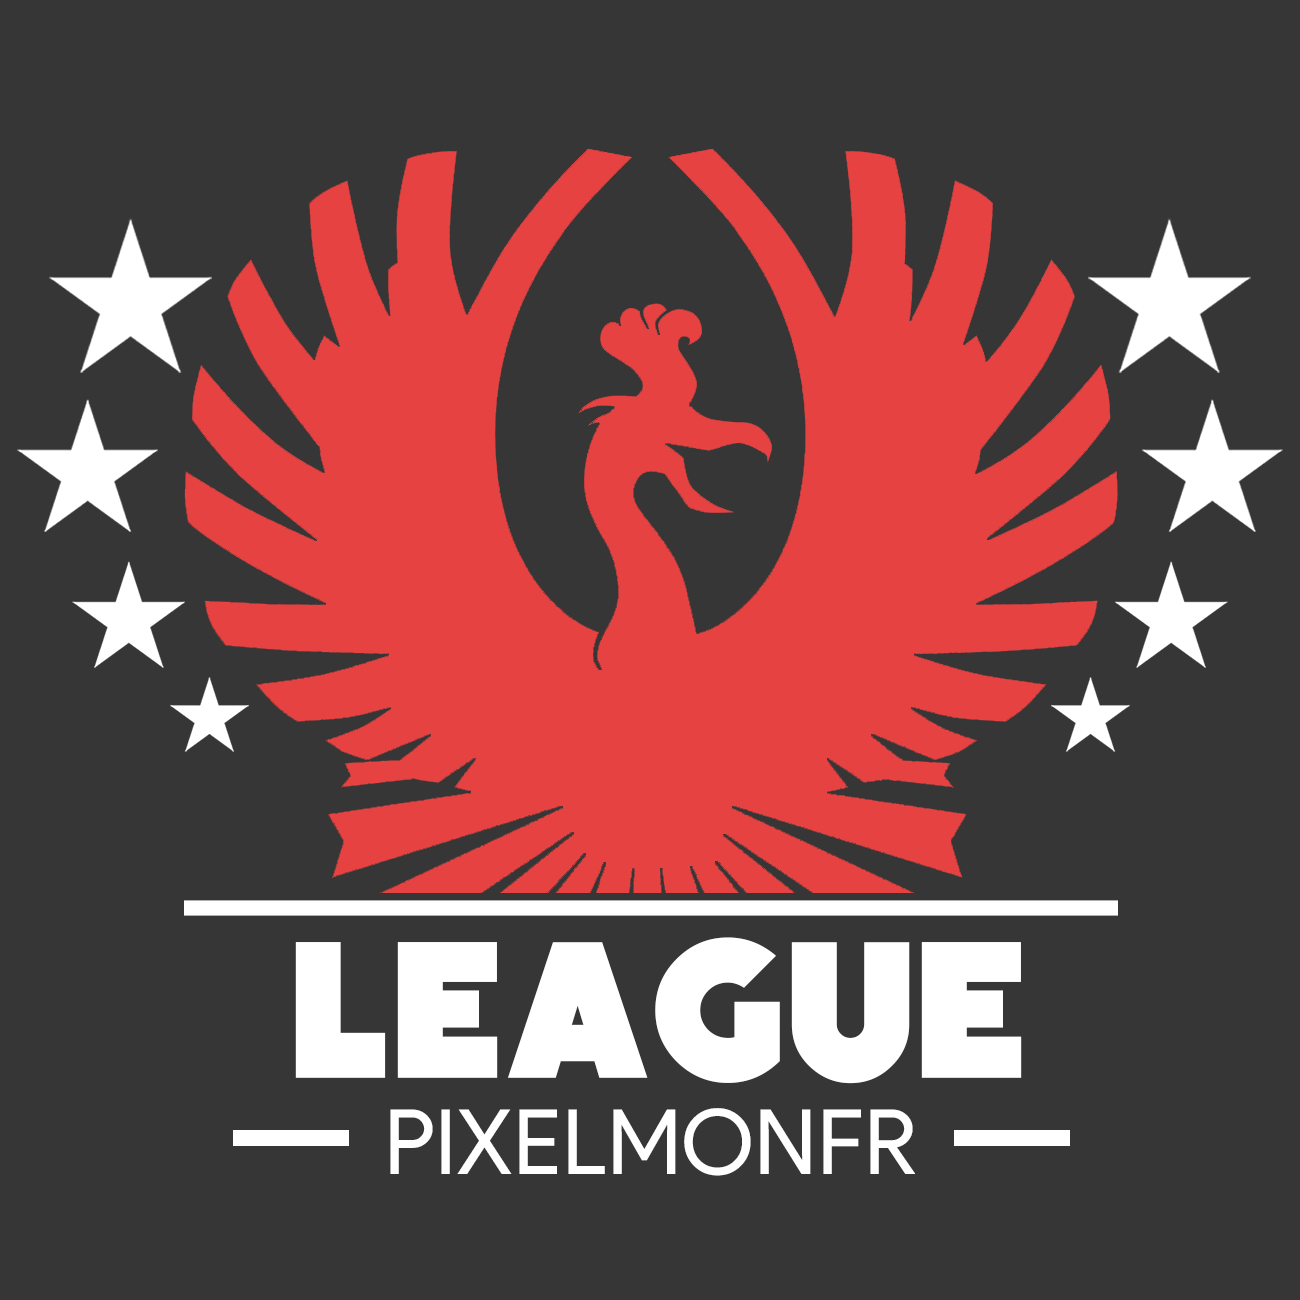 leaguepixelmonfrv3.png